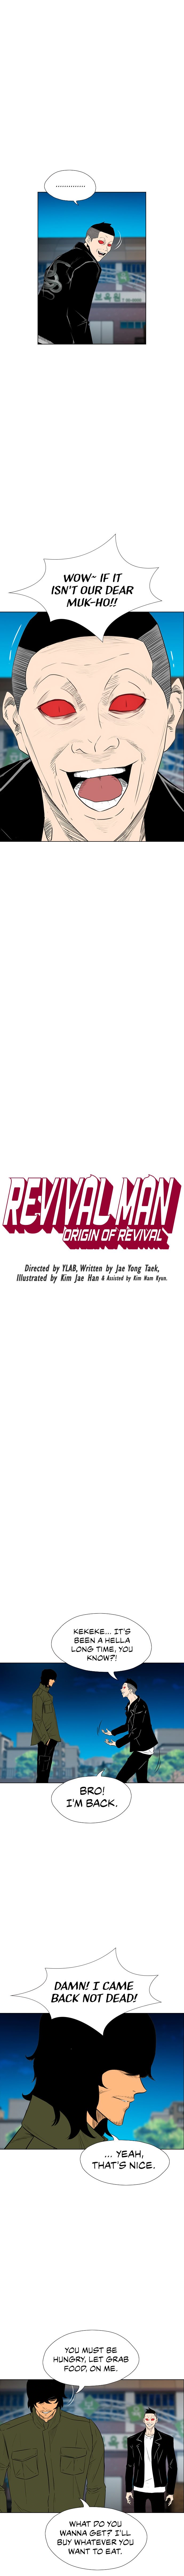 revival-man-chap-154-1